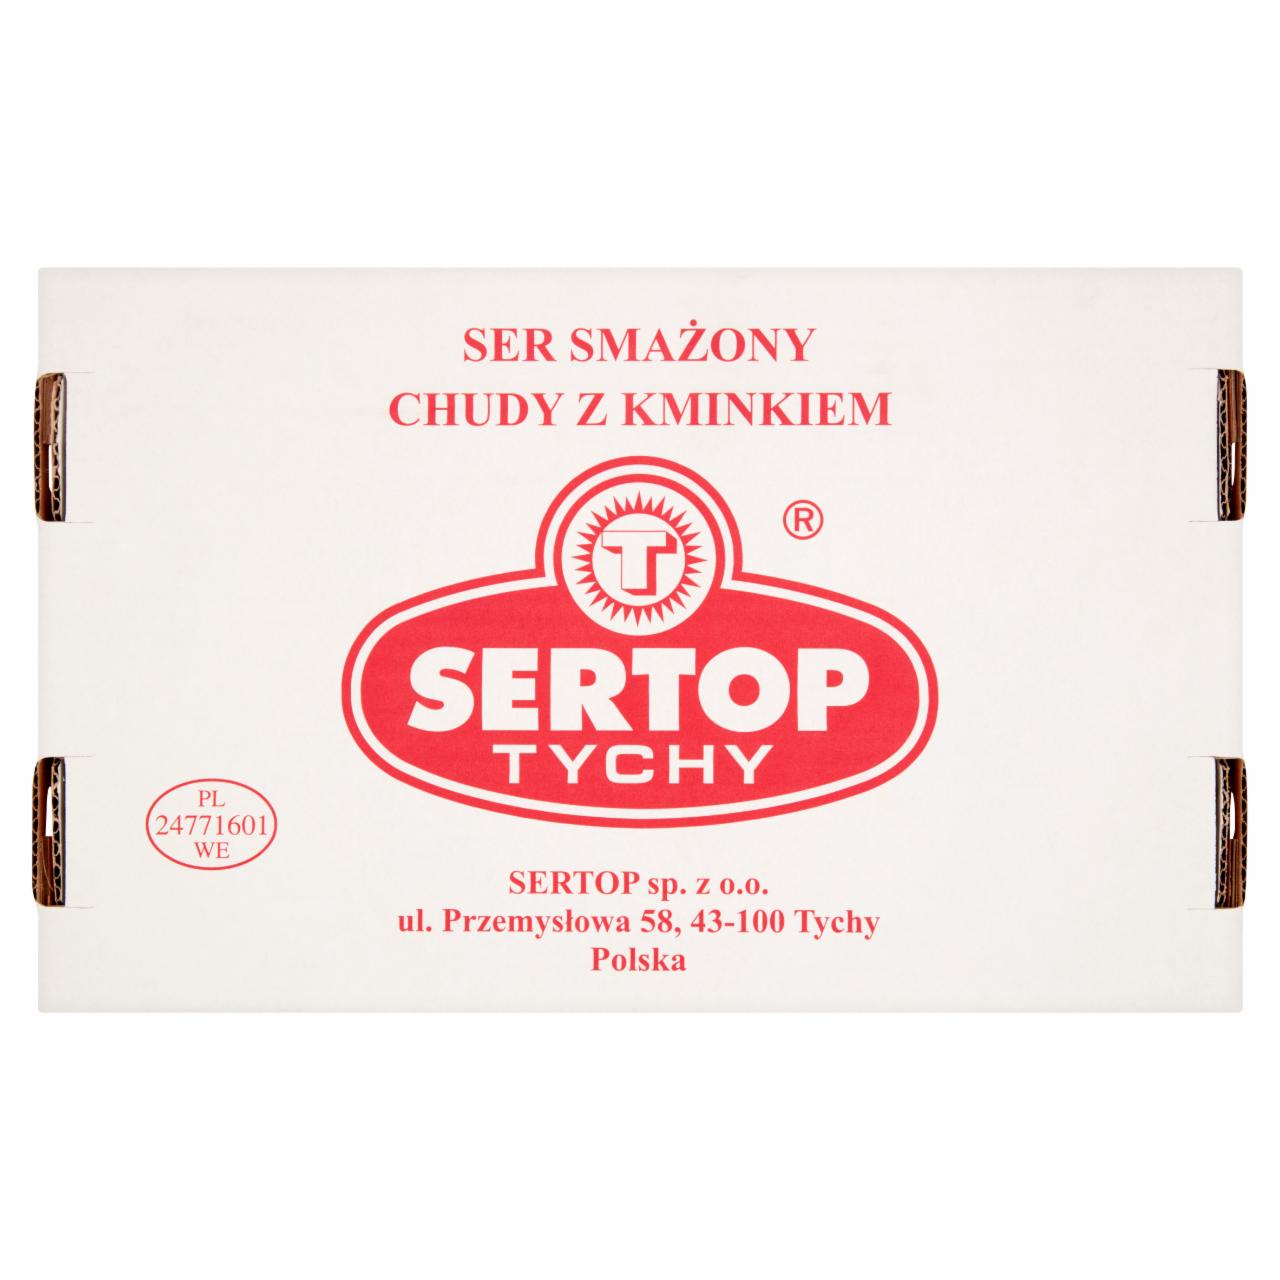 Zdjęcia - Sertop Tychy Ser smażony chudy z kminkiem 2 kg